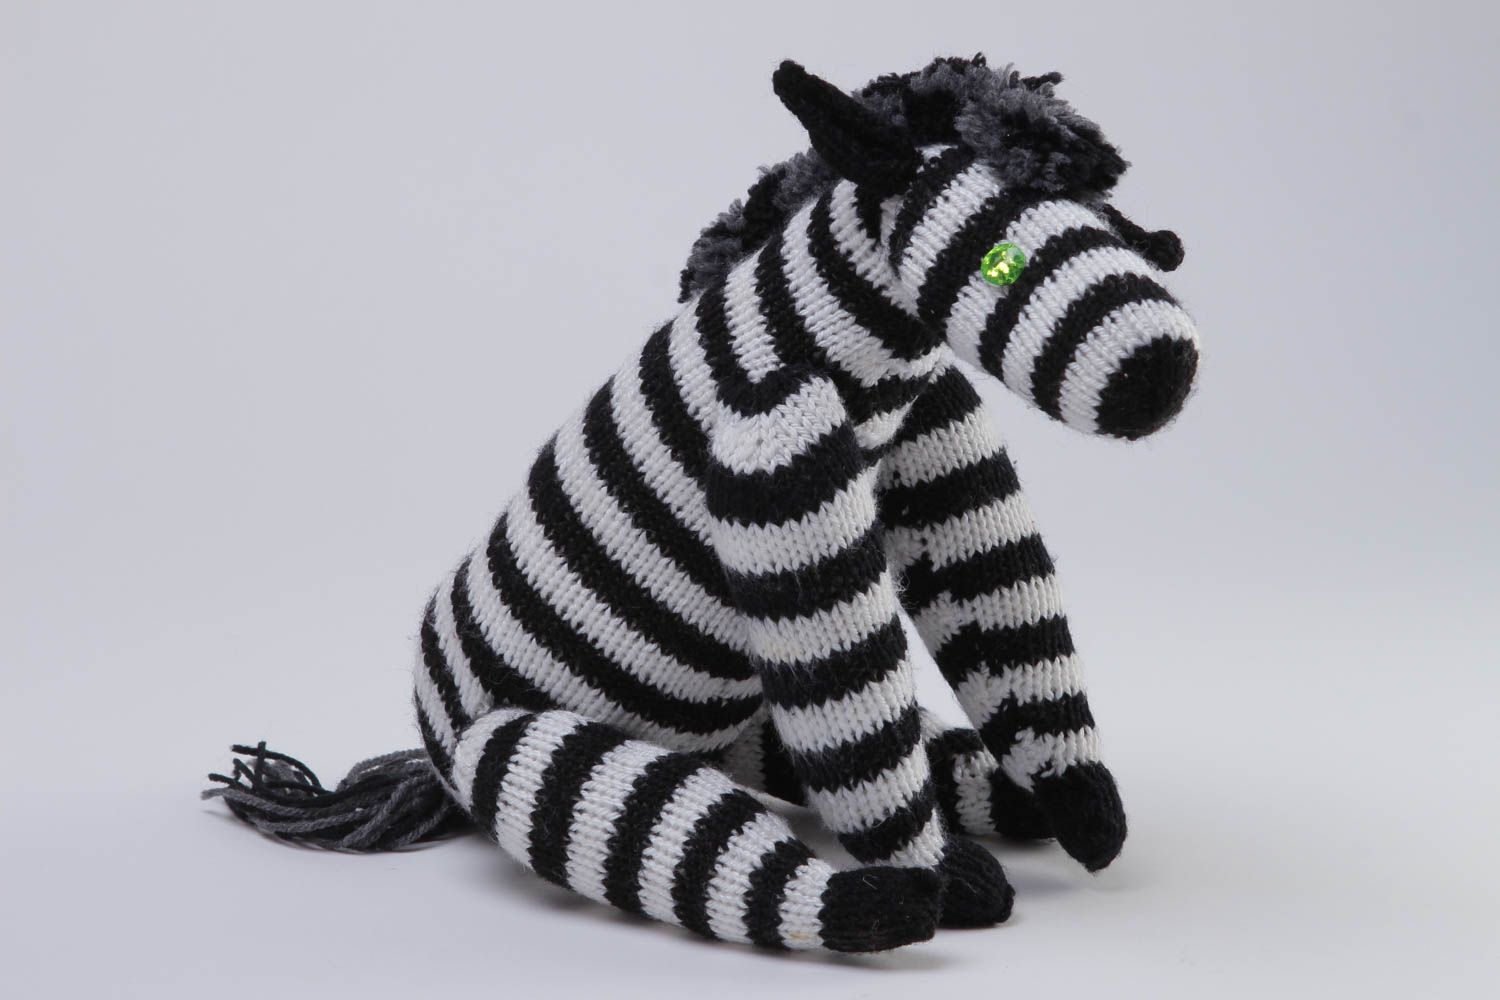 Handmade Strick Kuscheltier Zebra Spielzeug Geschenkidee für Kinder schön foto 3